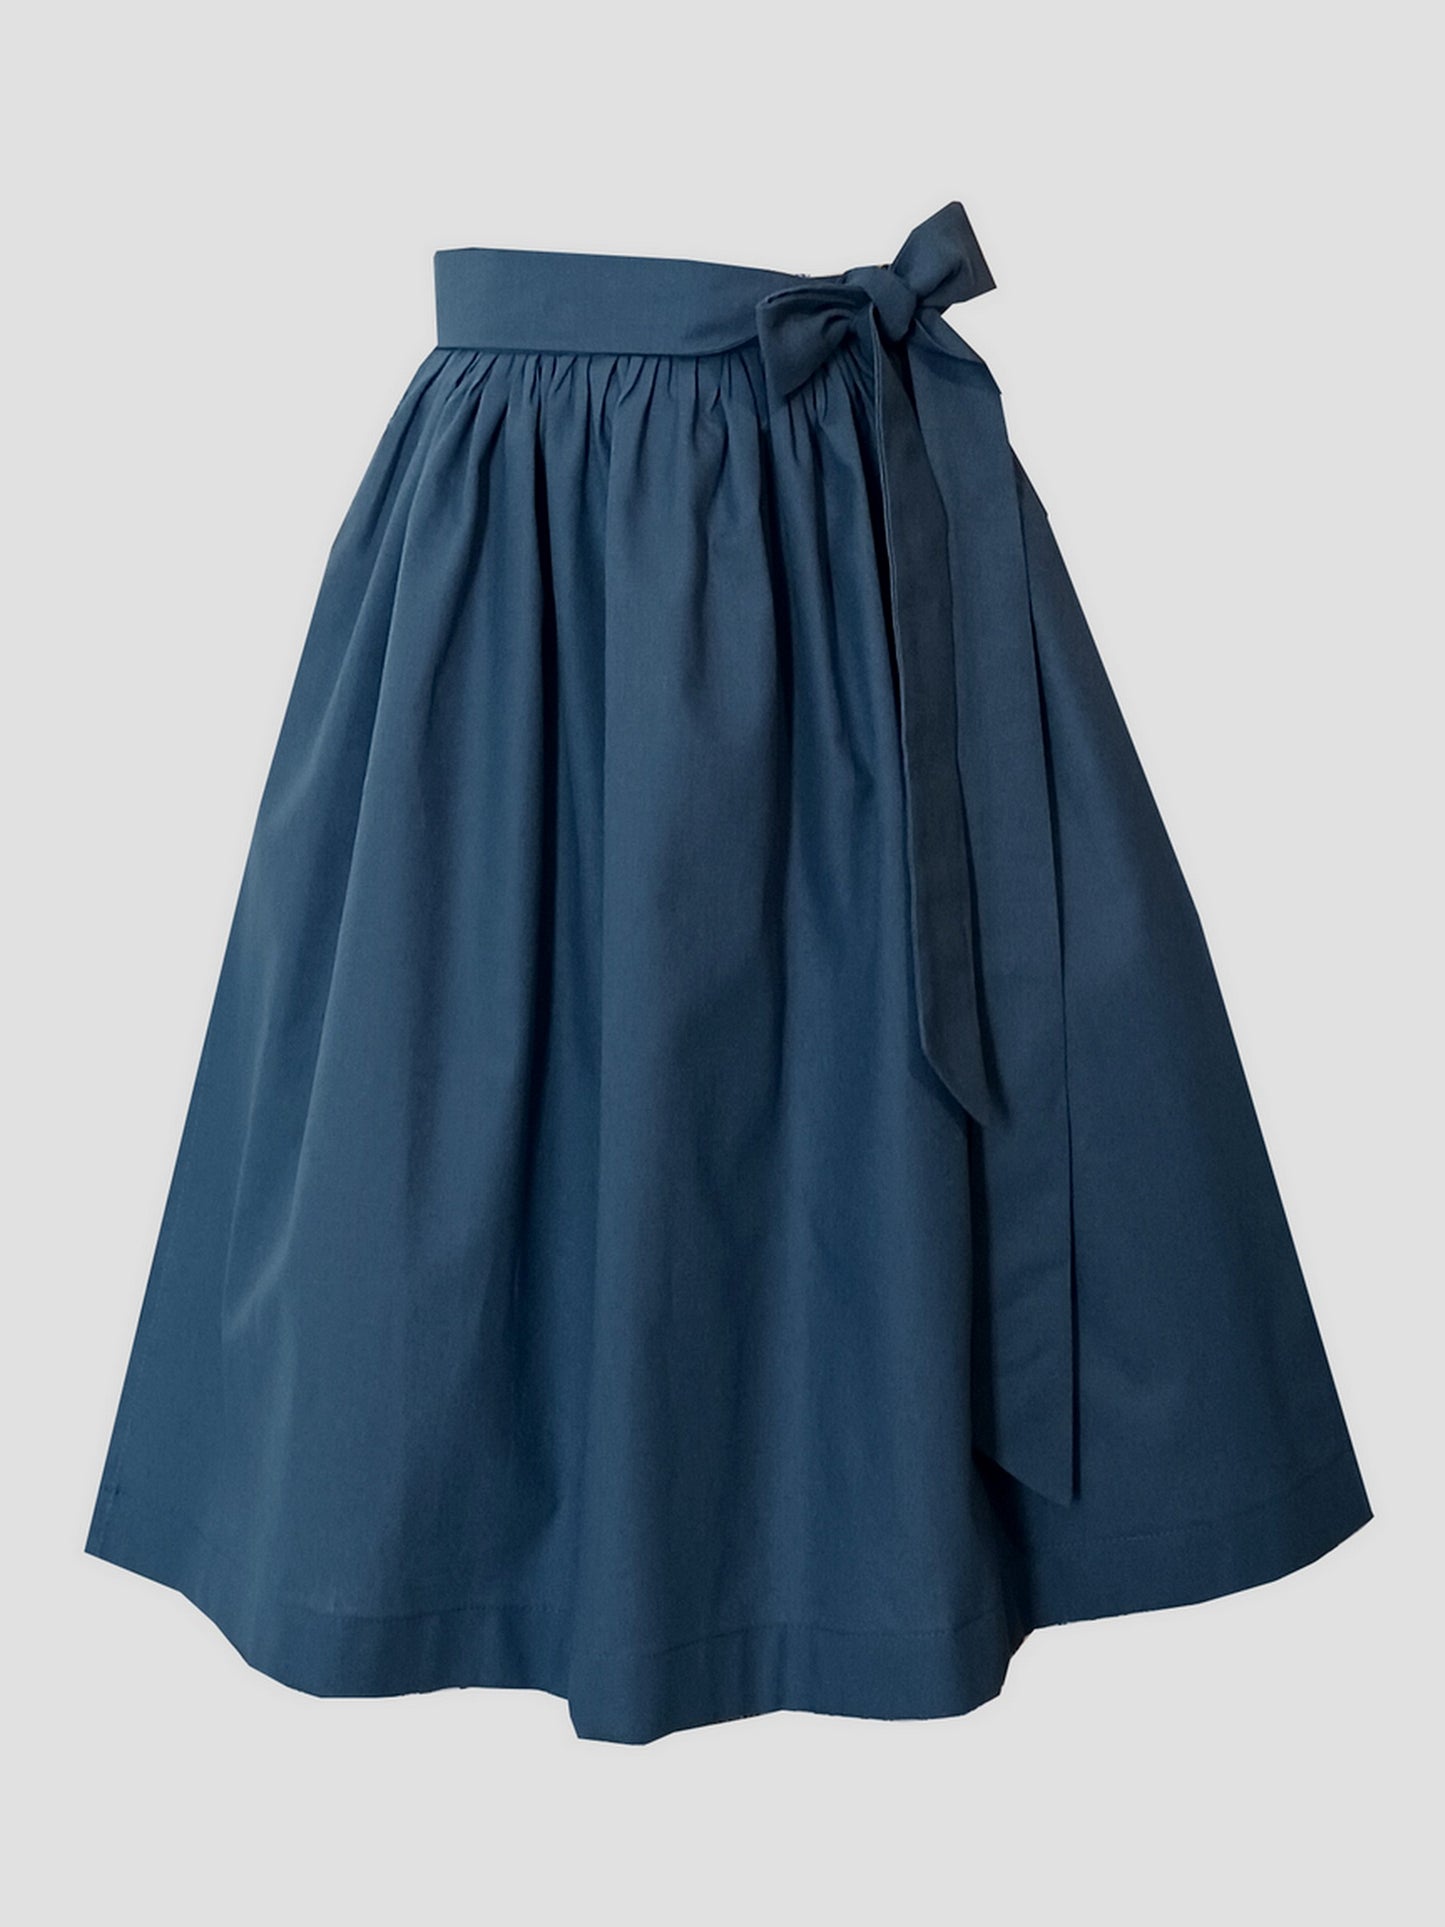 Ladies dirndl apron cotton dusty blue